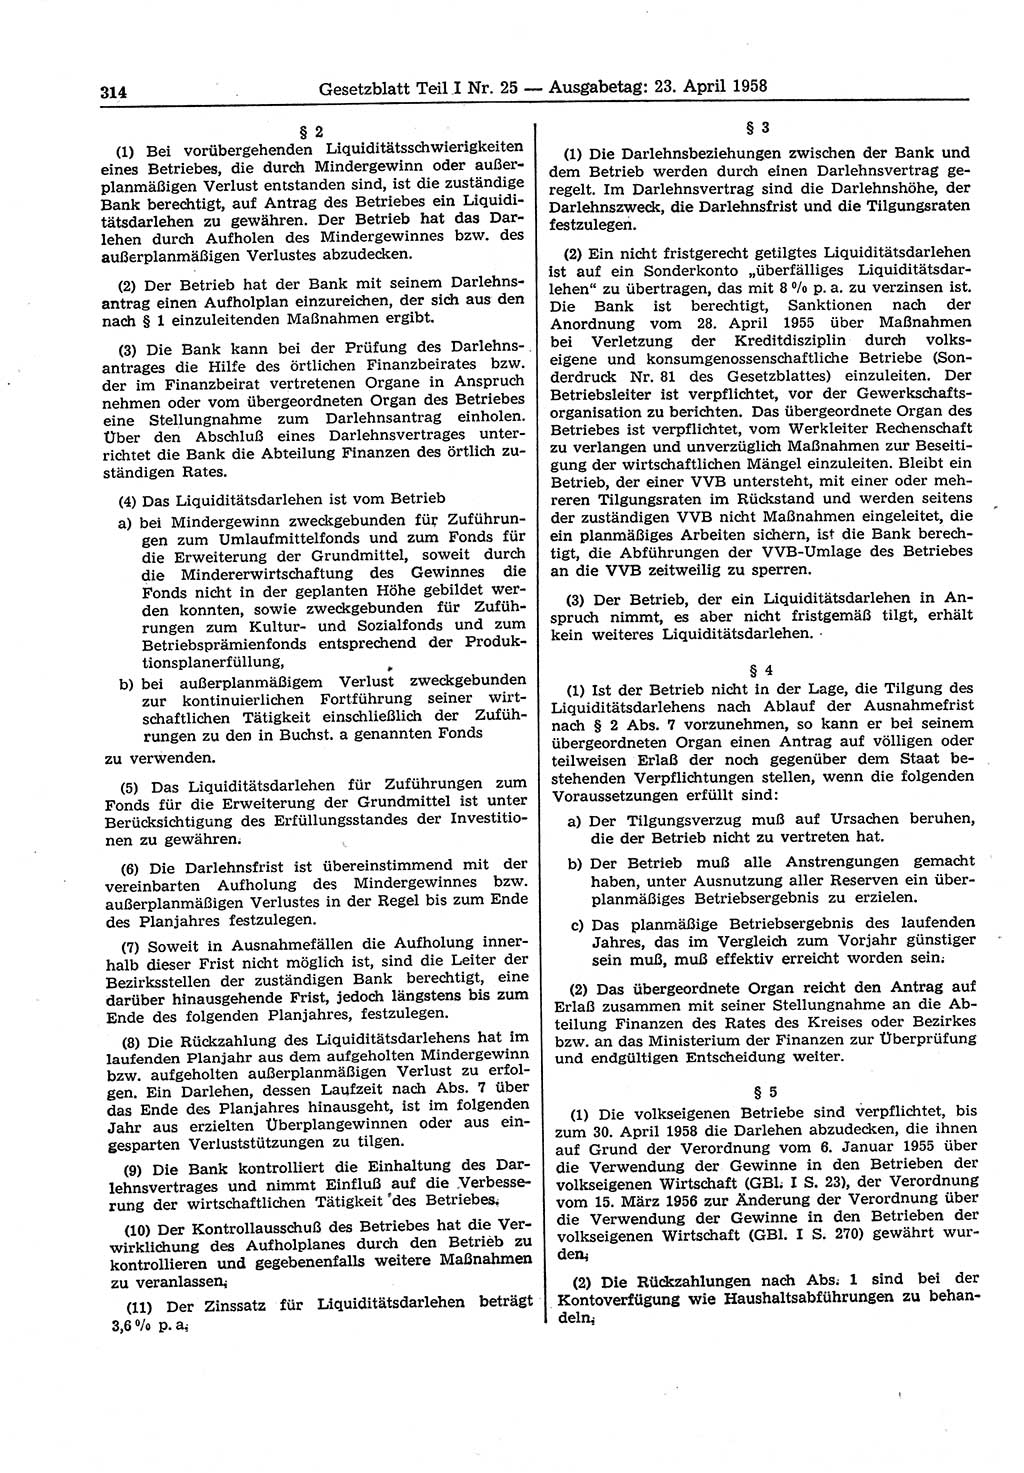 Gesetzblatt (GBl.) der Deutschen Demokratischen Republik (DDR) Teil Ⅰ 1958, Seite 314 (GBl. DDR Ⅰ 1958, S. 314)